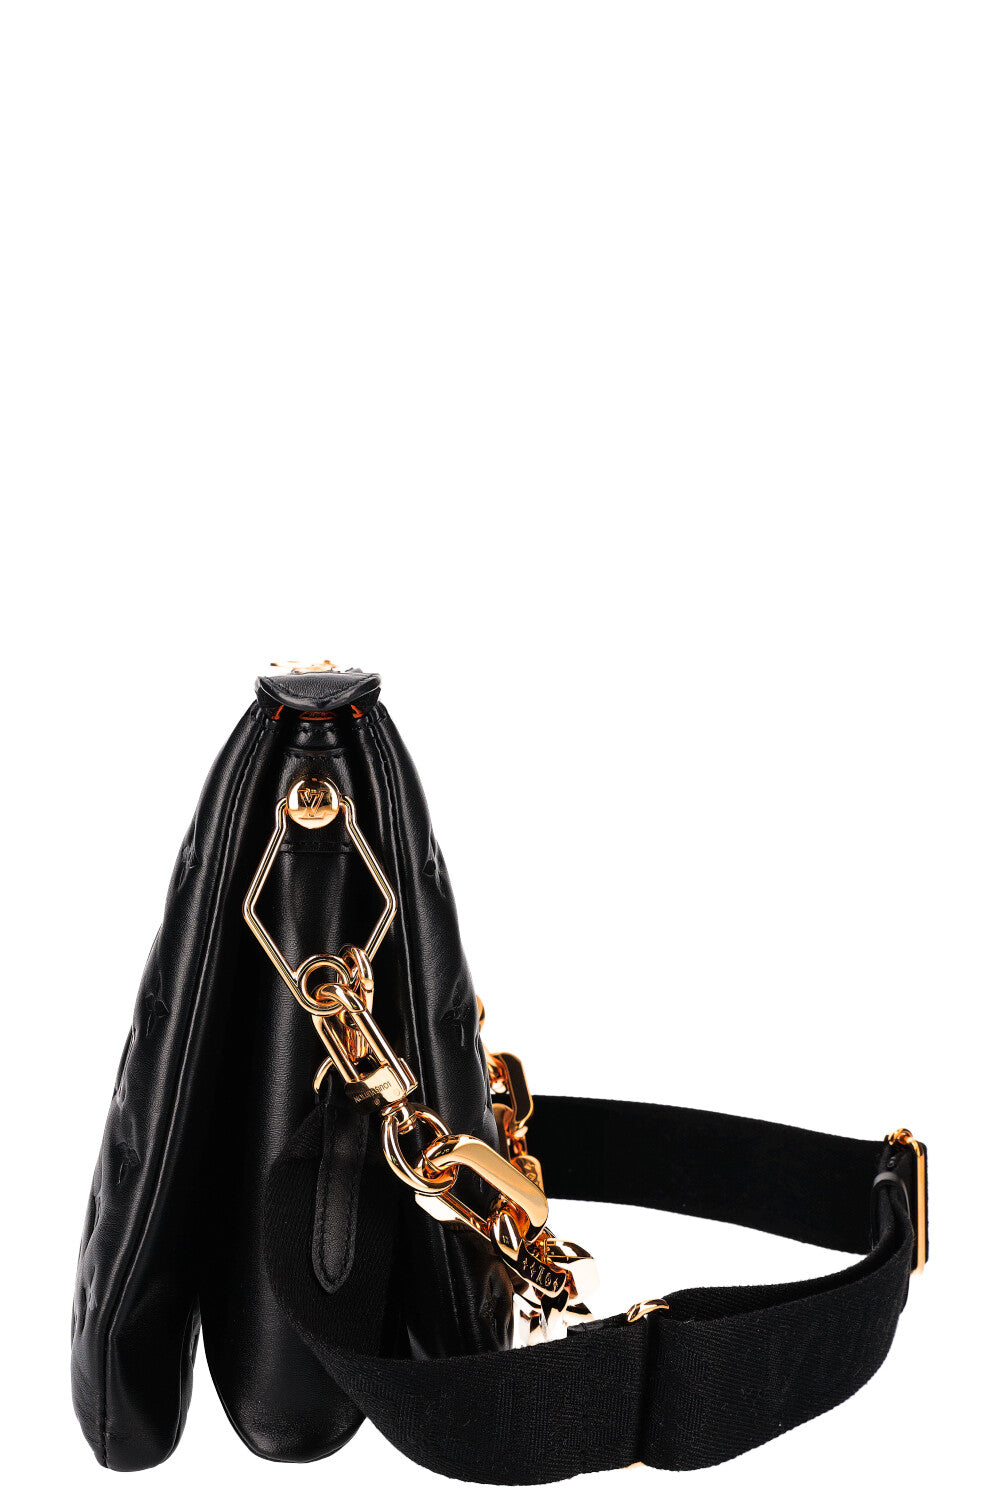 LOUIS VUITTON - Coussin MM - Black Leather Shoulder Bag w/ 2 Straps FU